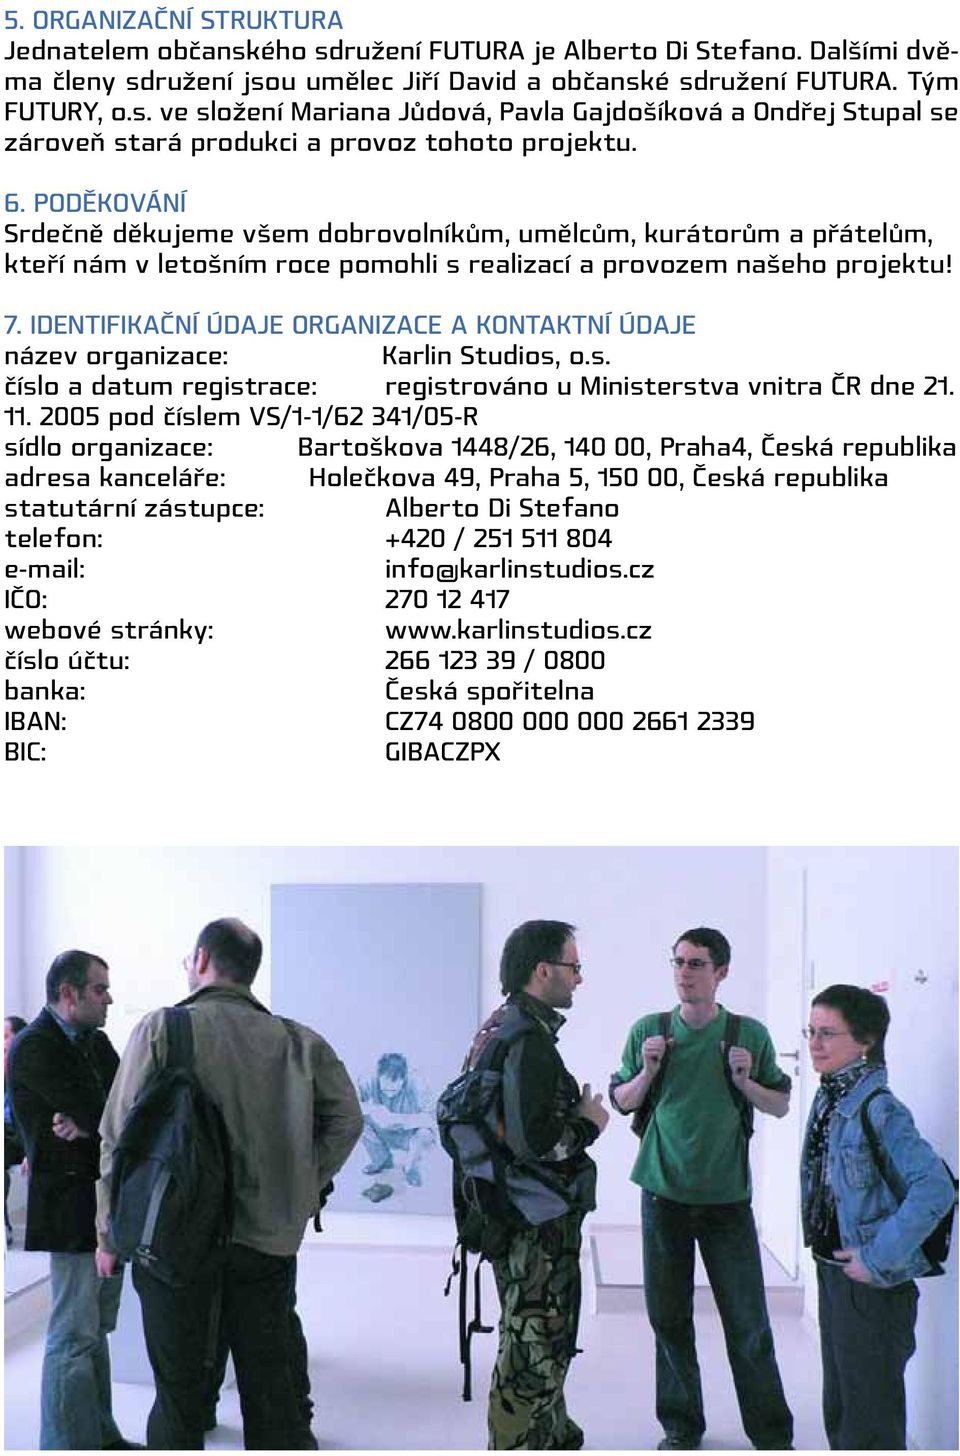 Identifikační údaje organizace a kontaktní údaje název organizace: Karlin Studios, o.s. číslo a datum registrace: registrováno u Ministerstva vnitra ČR dne 21. 11.